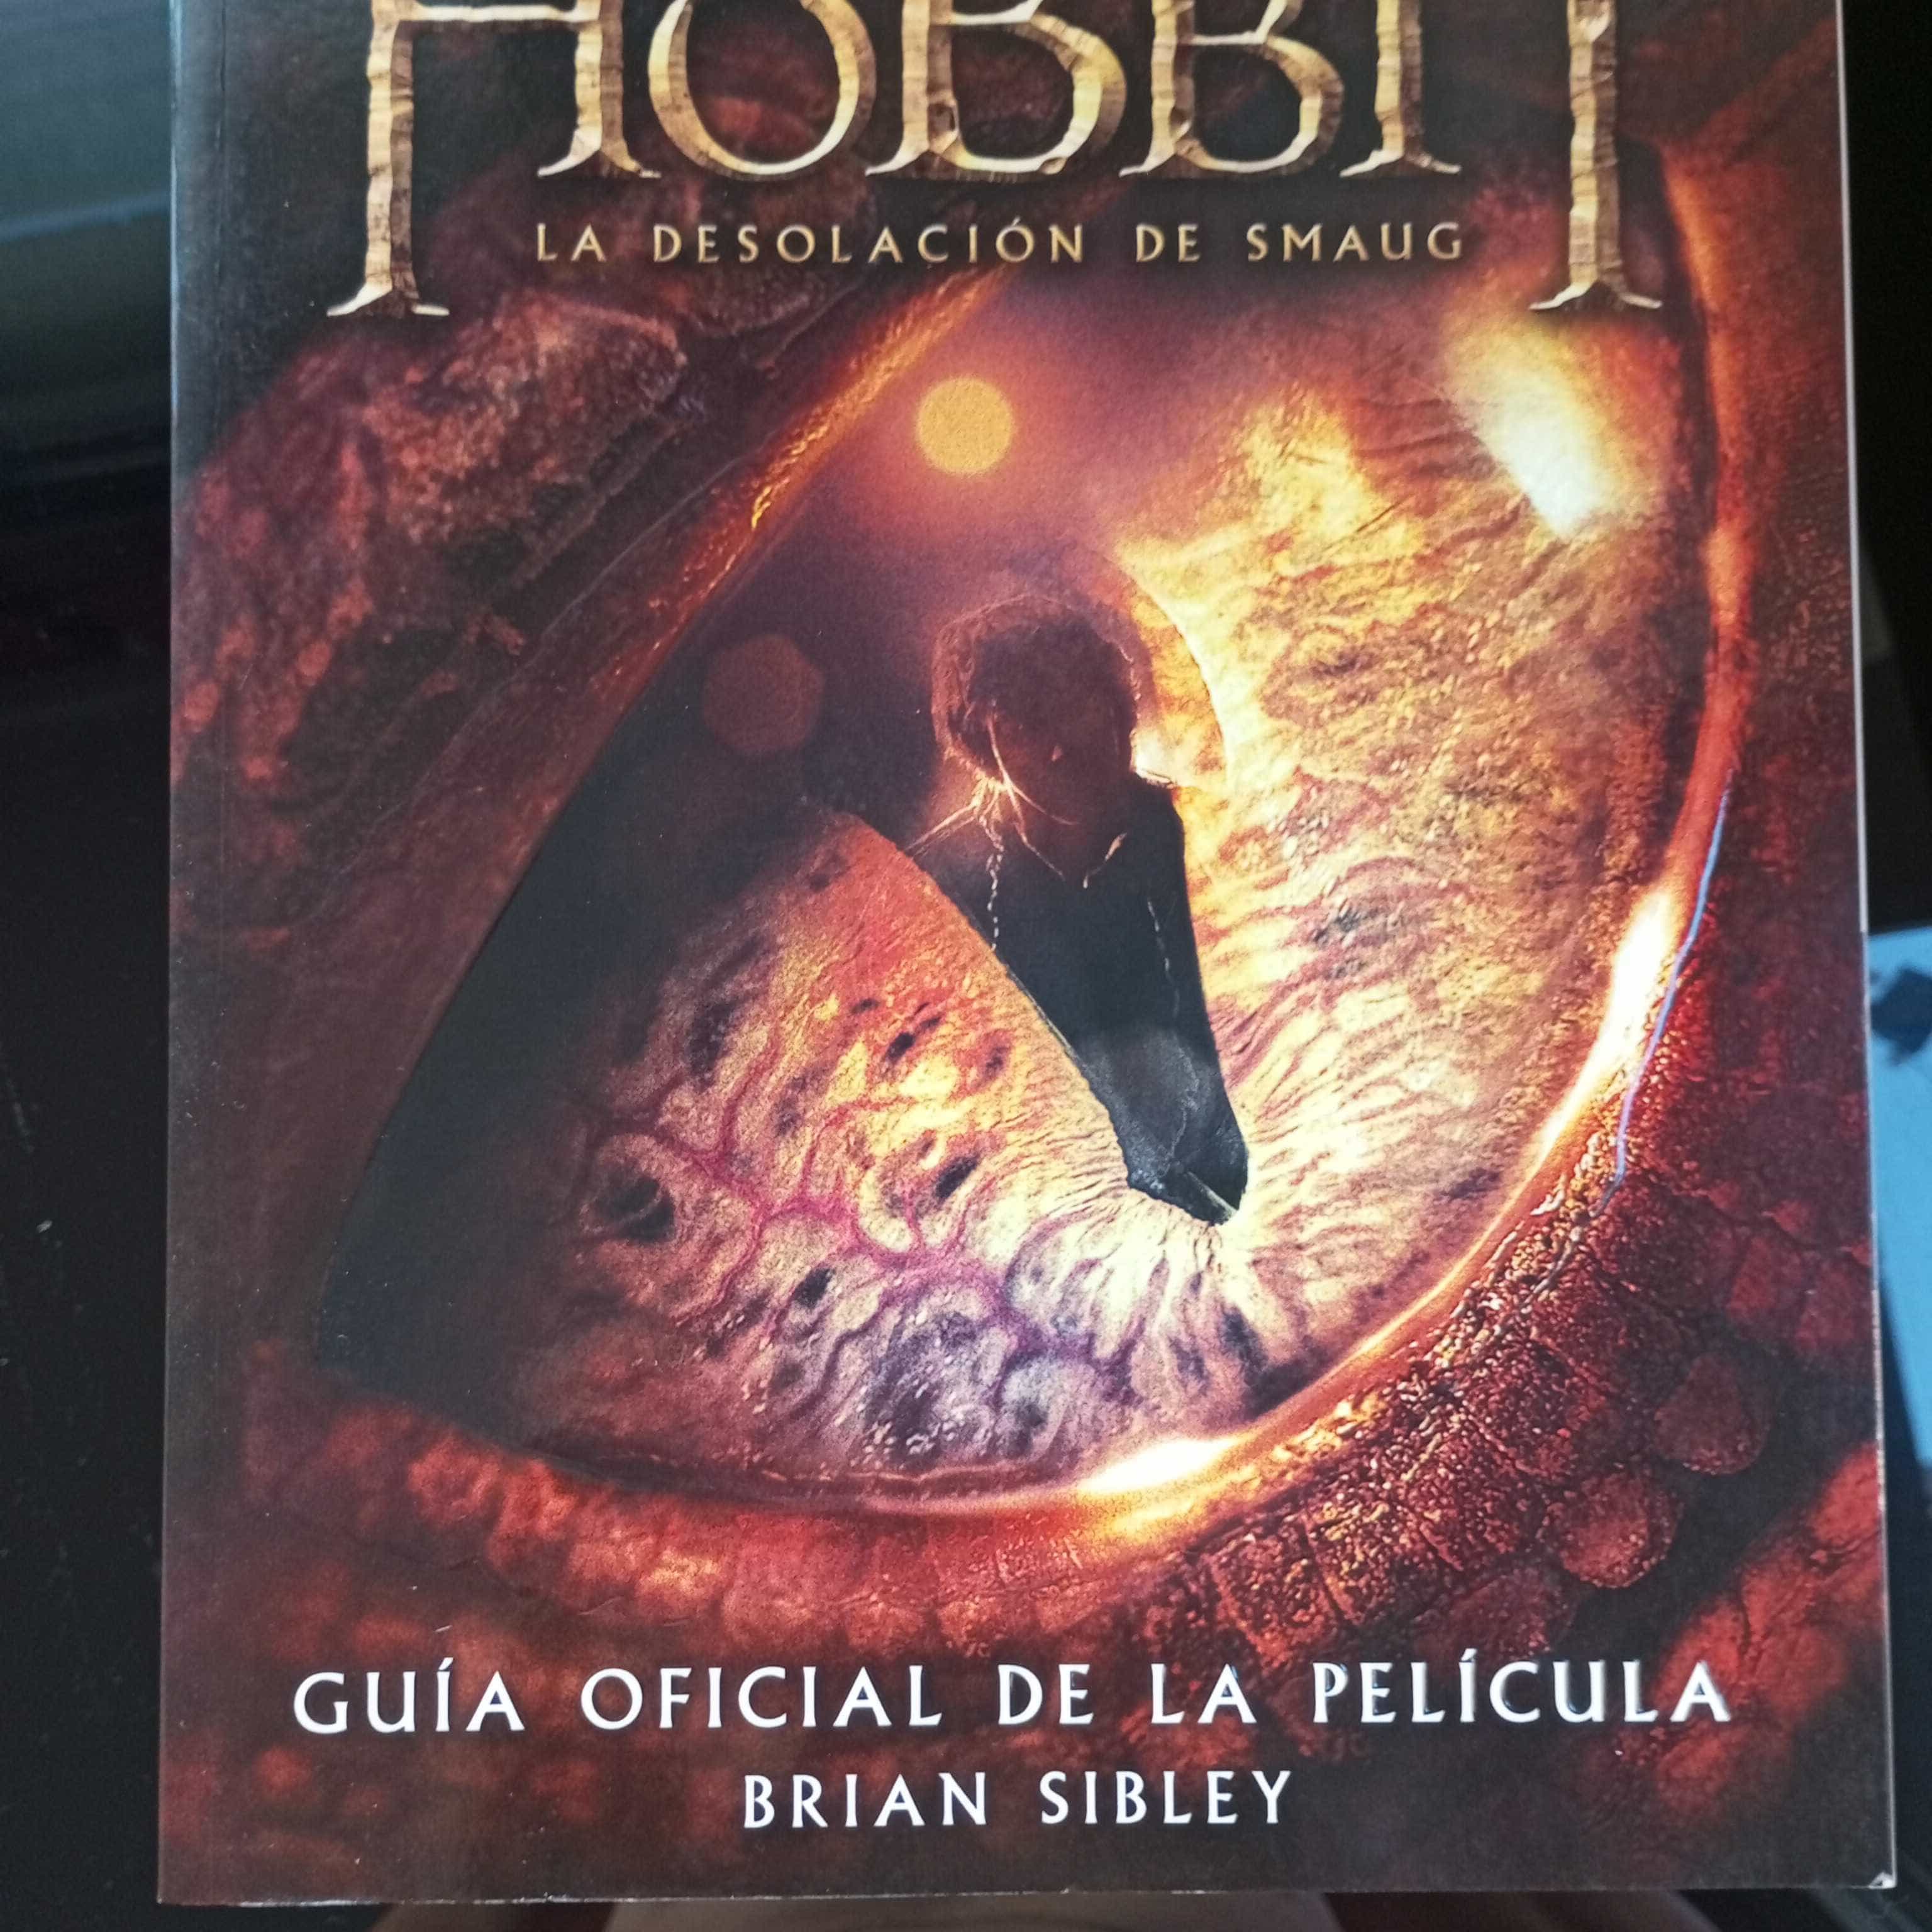 Libro de segunda mano: El Hobbit. La Desolación de Smaug. Guía oficial de la película